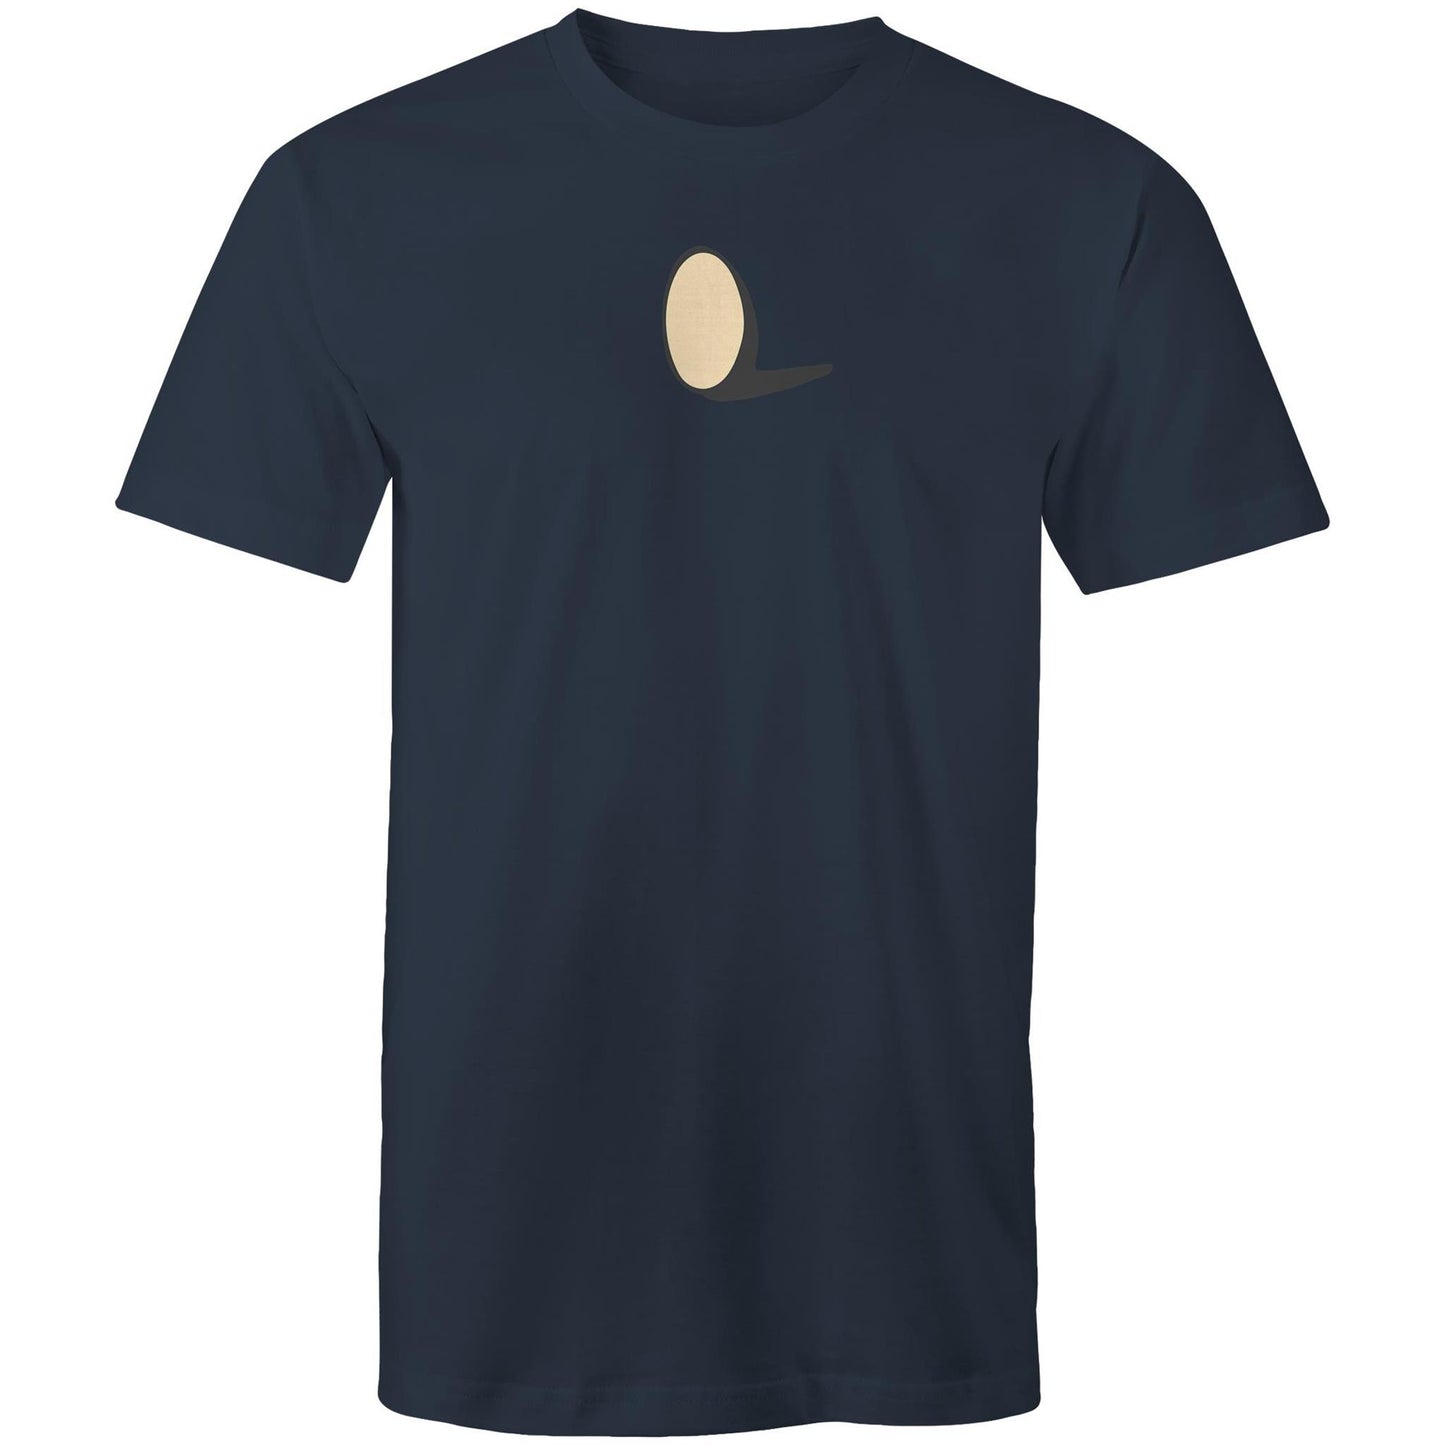 Egg T Shirts for Men (Unisex)